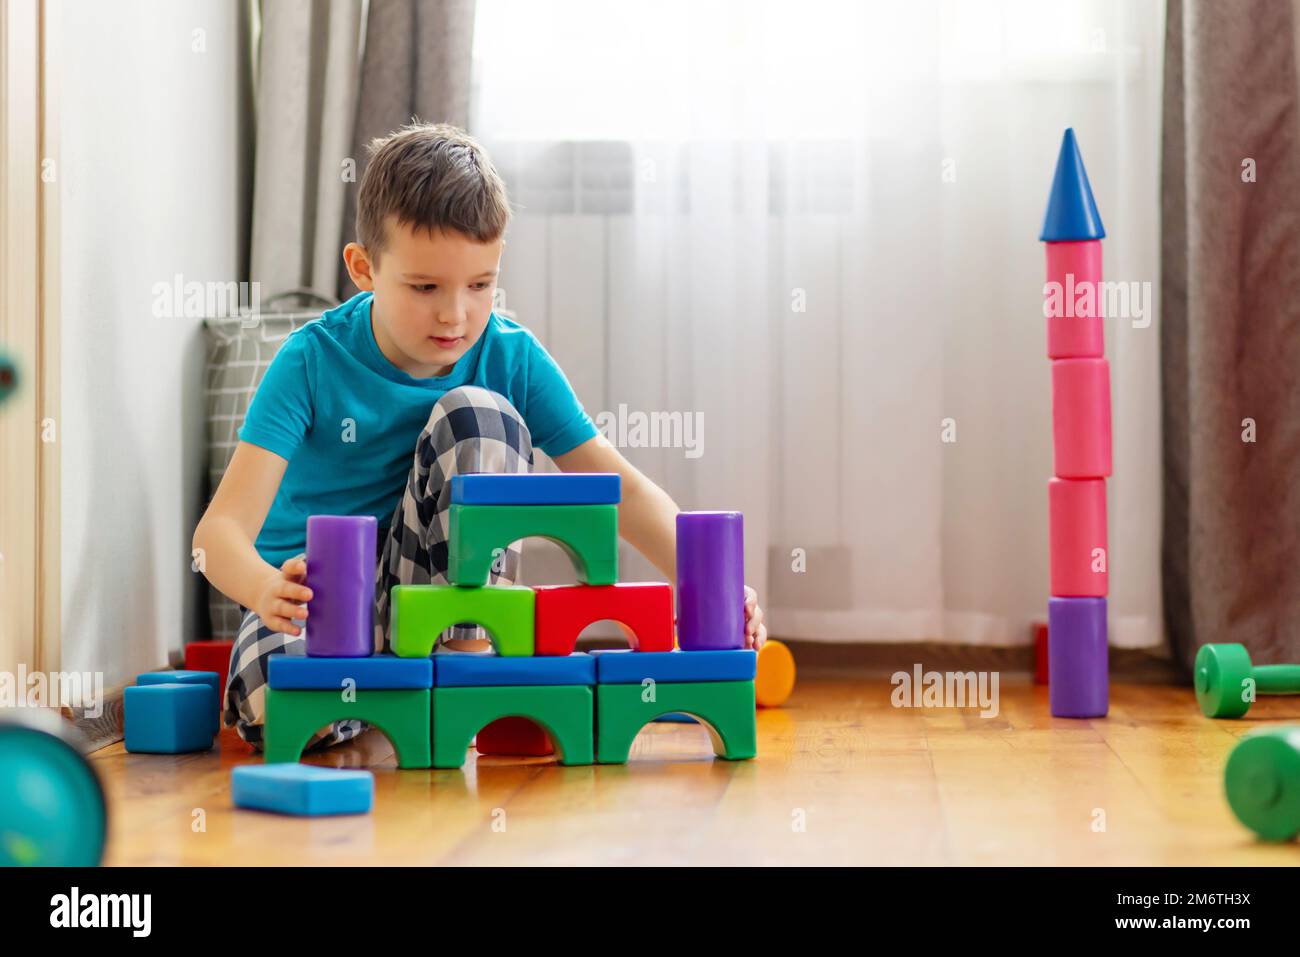 Niedliches kleines Kind, das mit bunten Plastikspielzeugen oder Bausteinen spielt Stockfoto